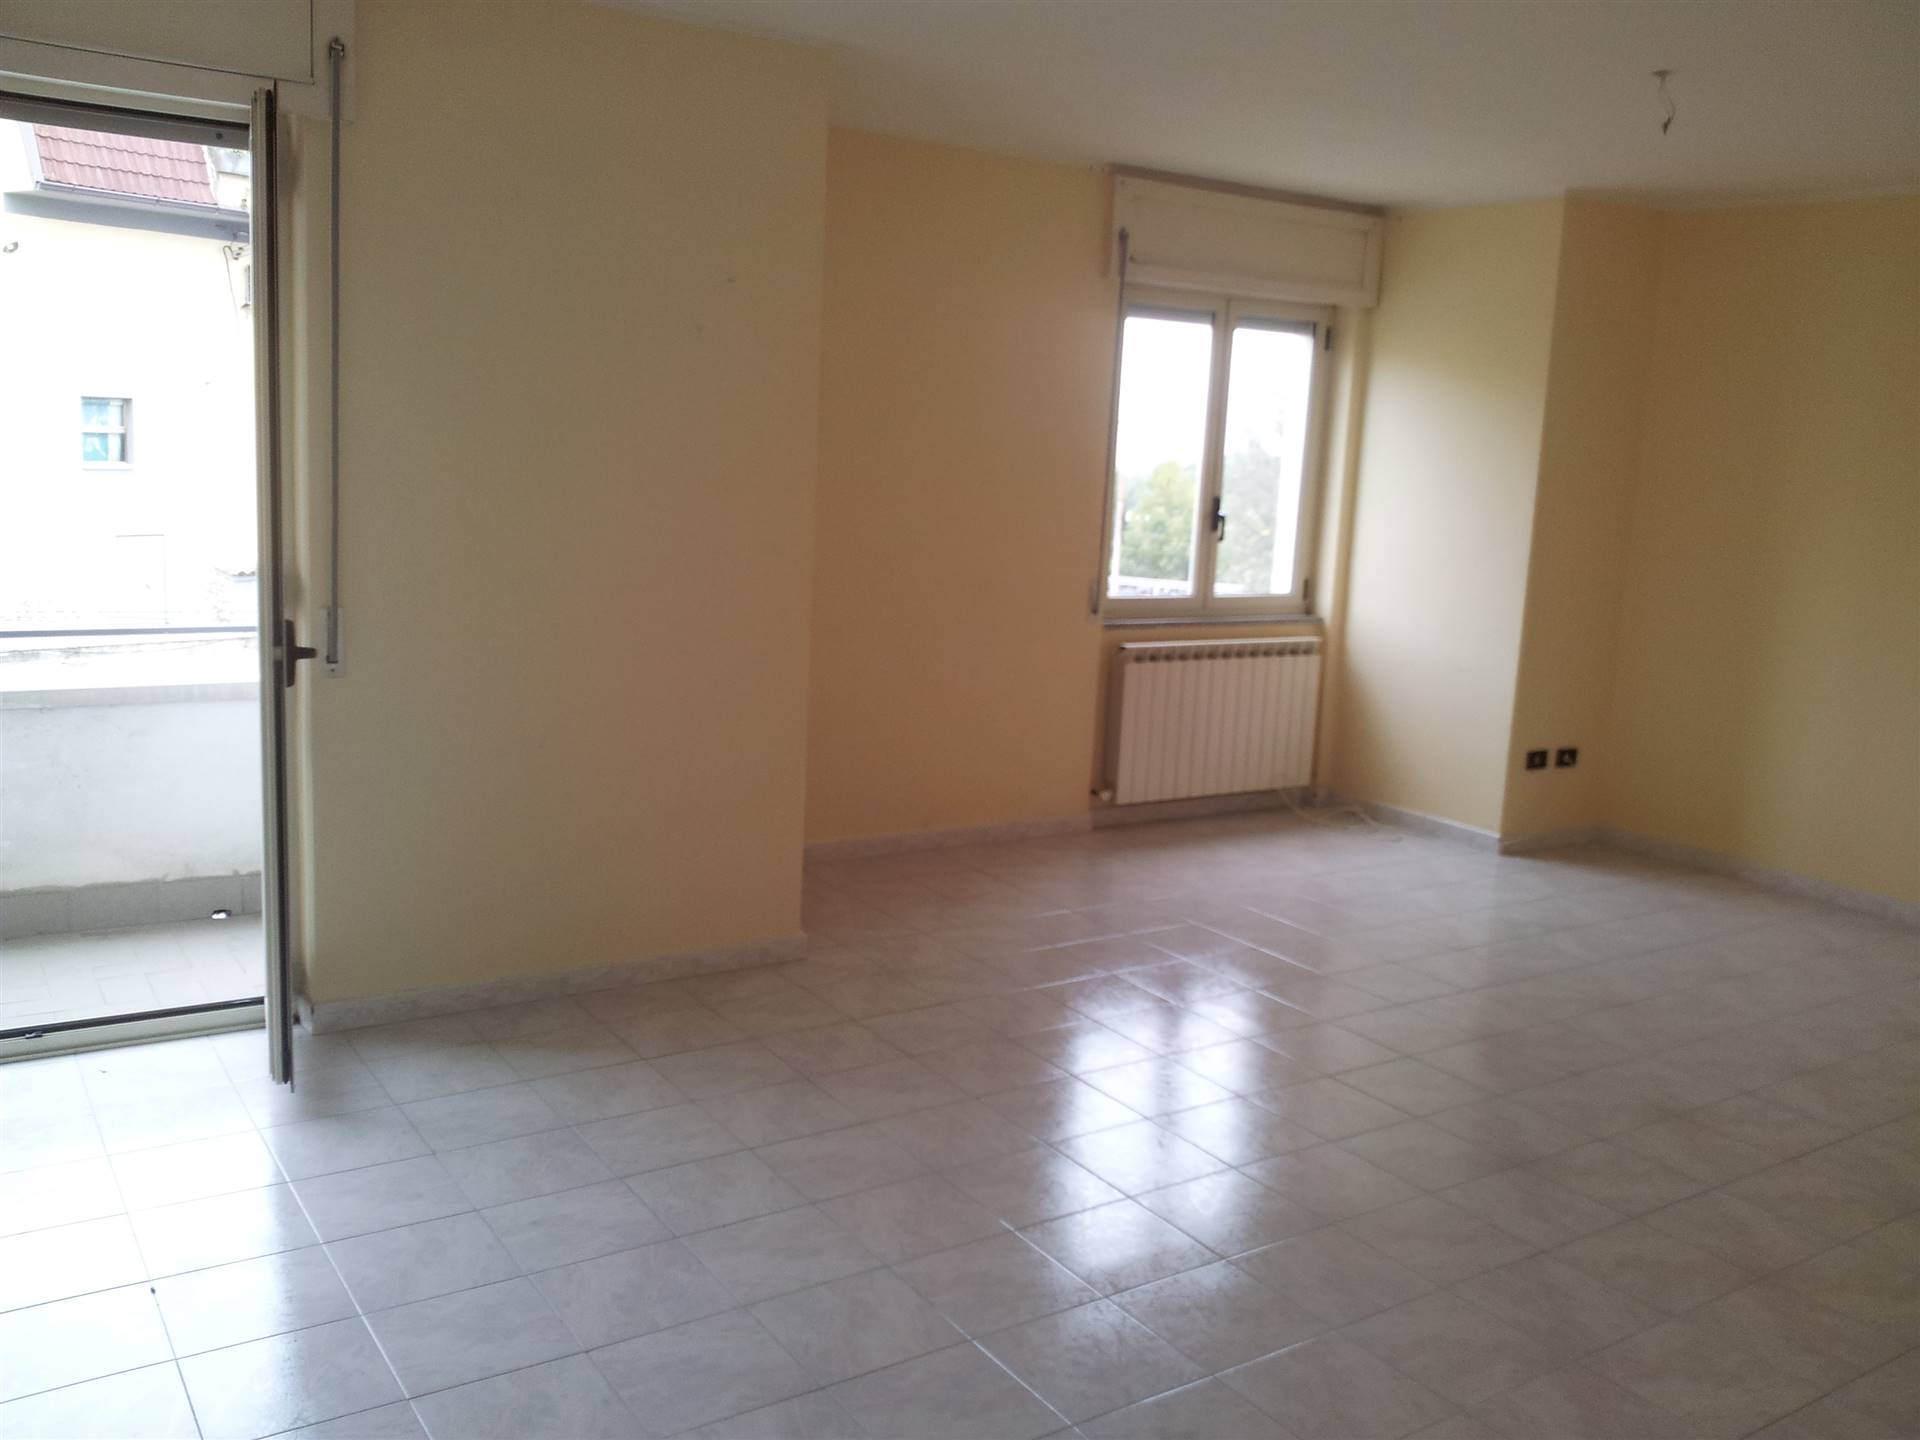 Appartamento in affitto a Montalto Uffugo, 4 locali, zona Località: STAZIONE DI MONTALTO, prezzo € 400 | CambioCasa.it